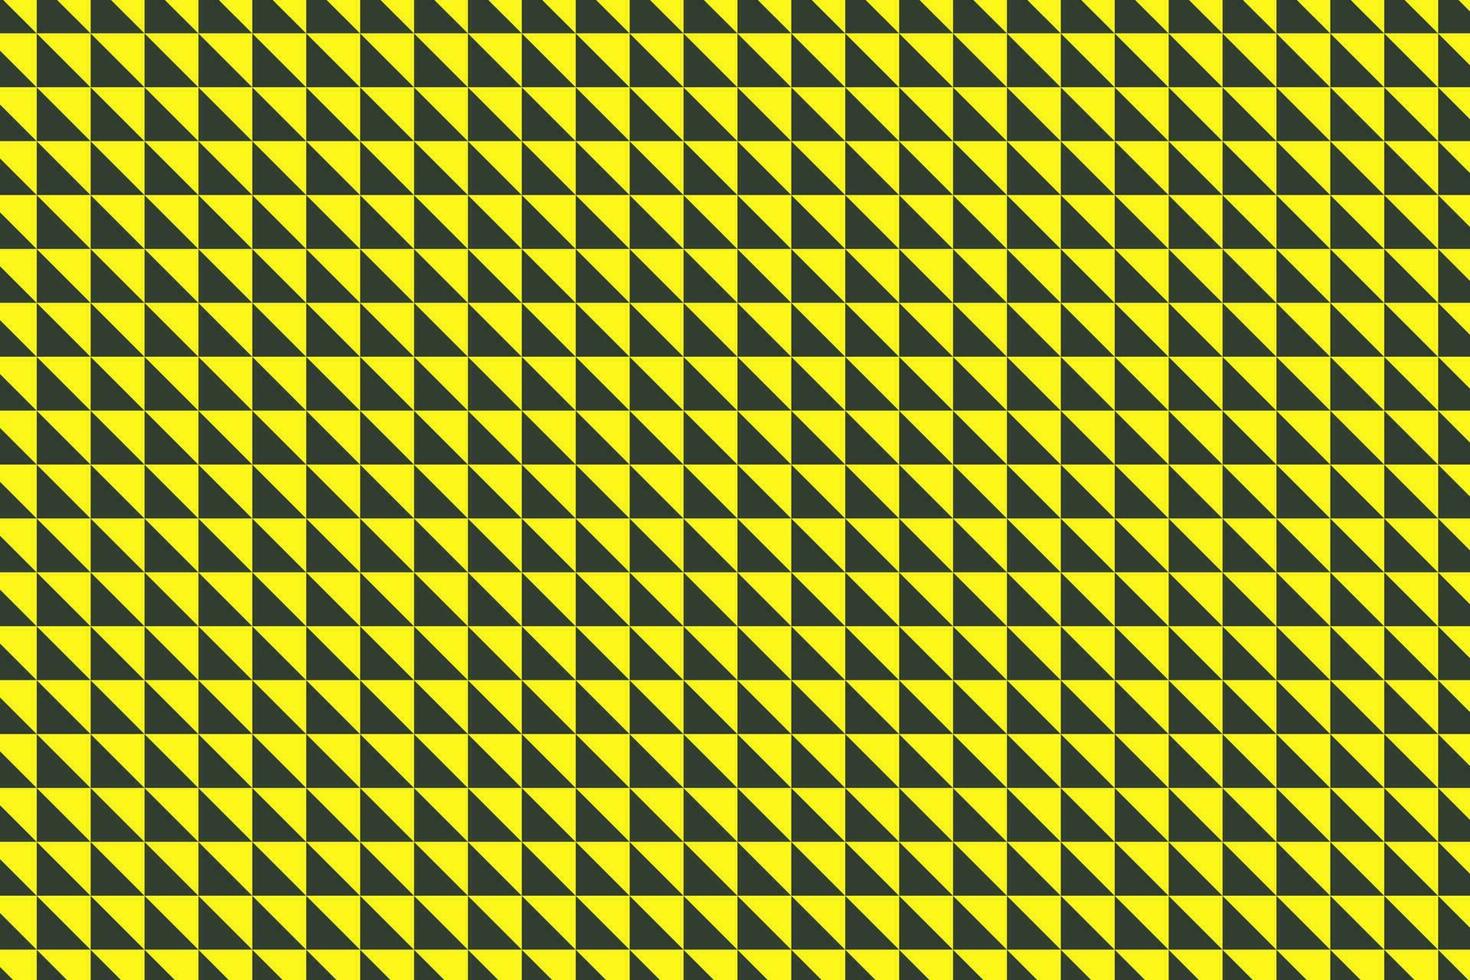 Gelb und schwarz zwei Hälften Platz Mosaik Muster. Vektor Illustration.